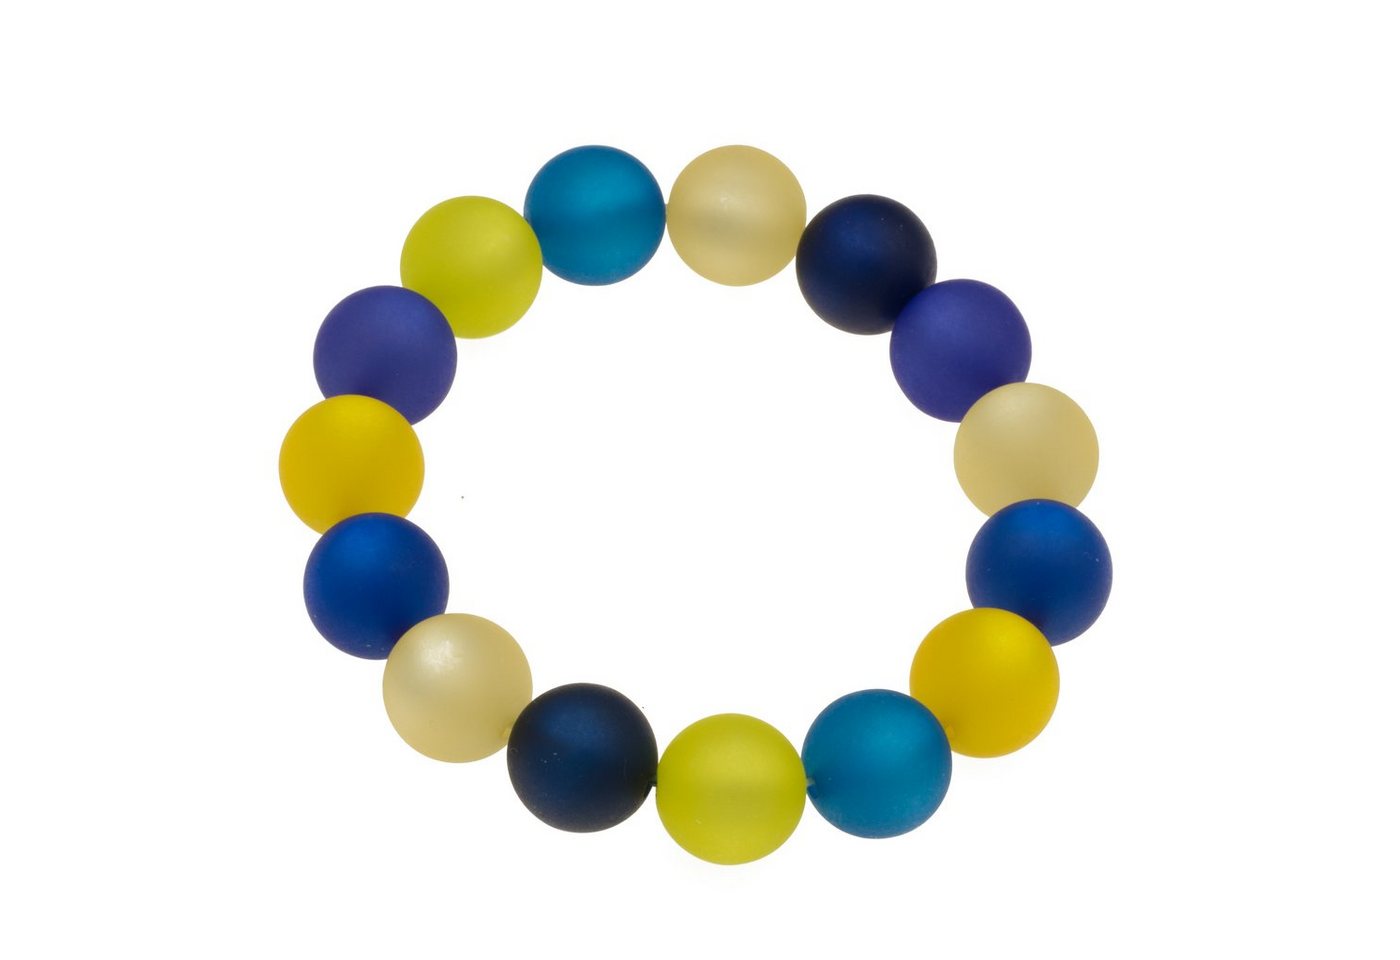 Bella Carina Armband Ukraine blau gelb, Polaris Perlen Armband 14 mm, blau gelb wie die Flagge der Ukraine von Bella Carina